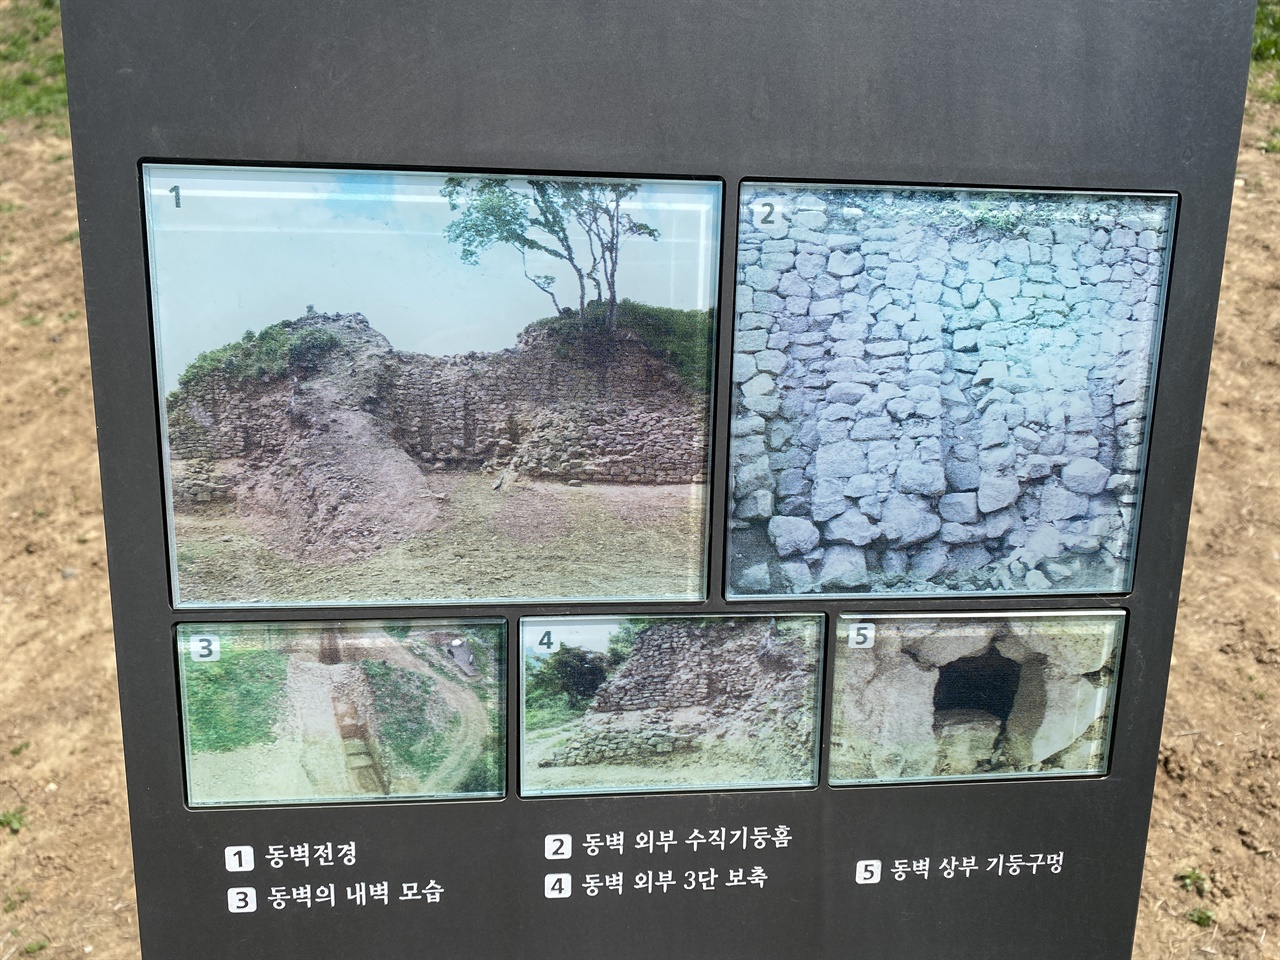 흙담처럼 보이는 동벽 내부에는 사진에서 보여주는 것처럼 석축이 존재한다. 